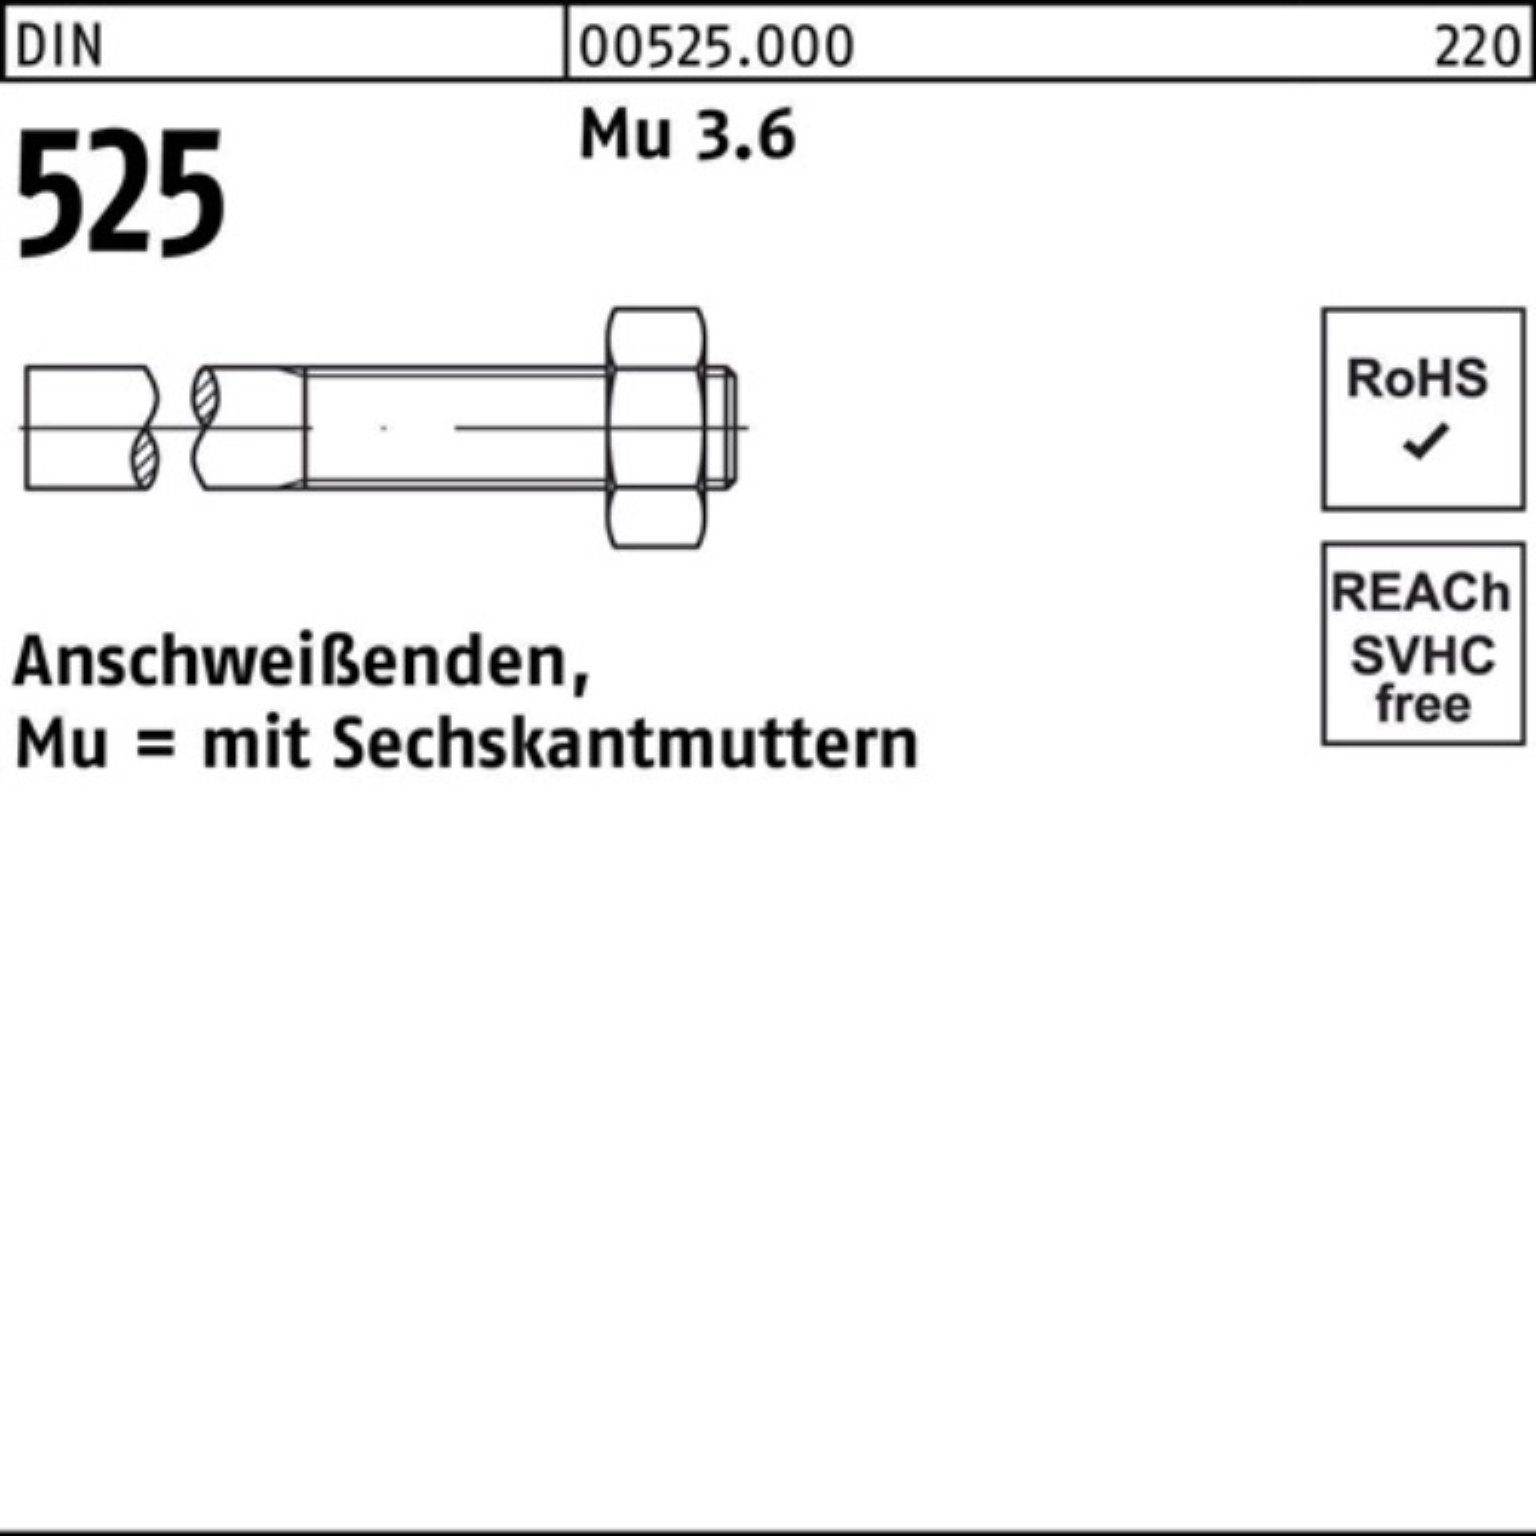 Reyher Sechskantmutter 100er Pack Anschweißende DIN 525 Sechskantmutter M12x 170/55 Mu 3.6 5